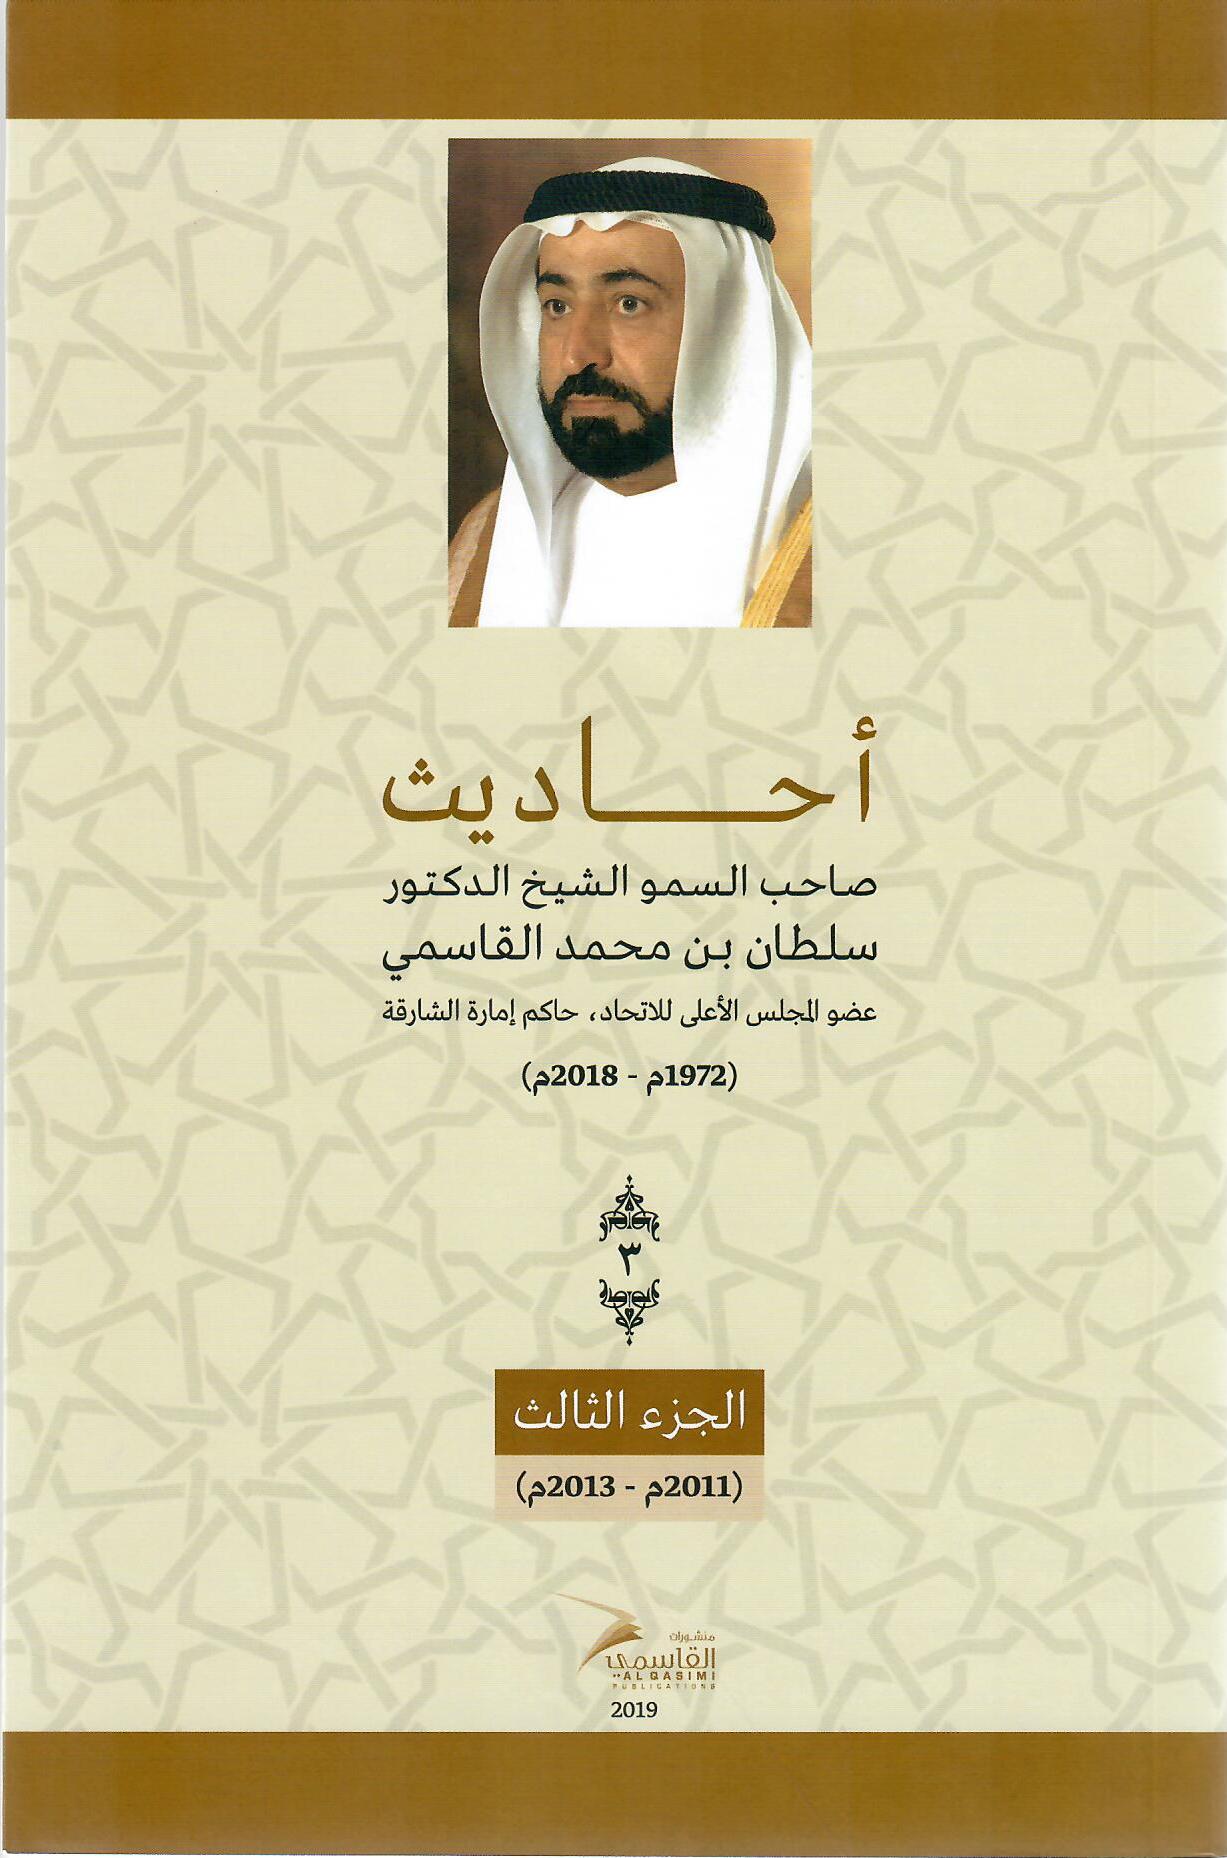 أحاديث صاحب السمو الشيخ الدكتور سلطان بن محمد القاسمي عضو المجلس الأعلى حاكم الشارقة ( 1972م - 2018م) الجزء الأول